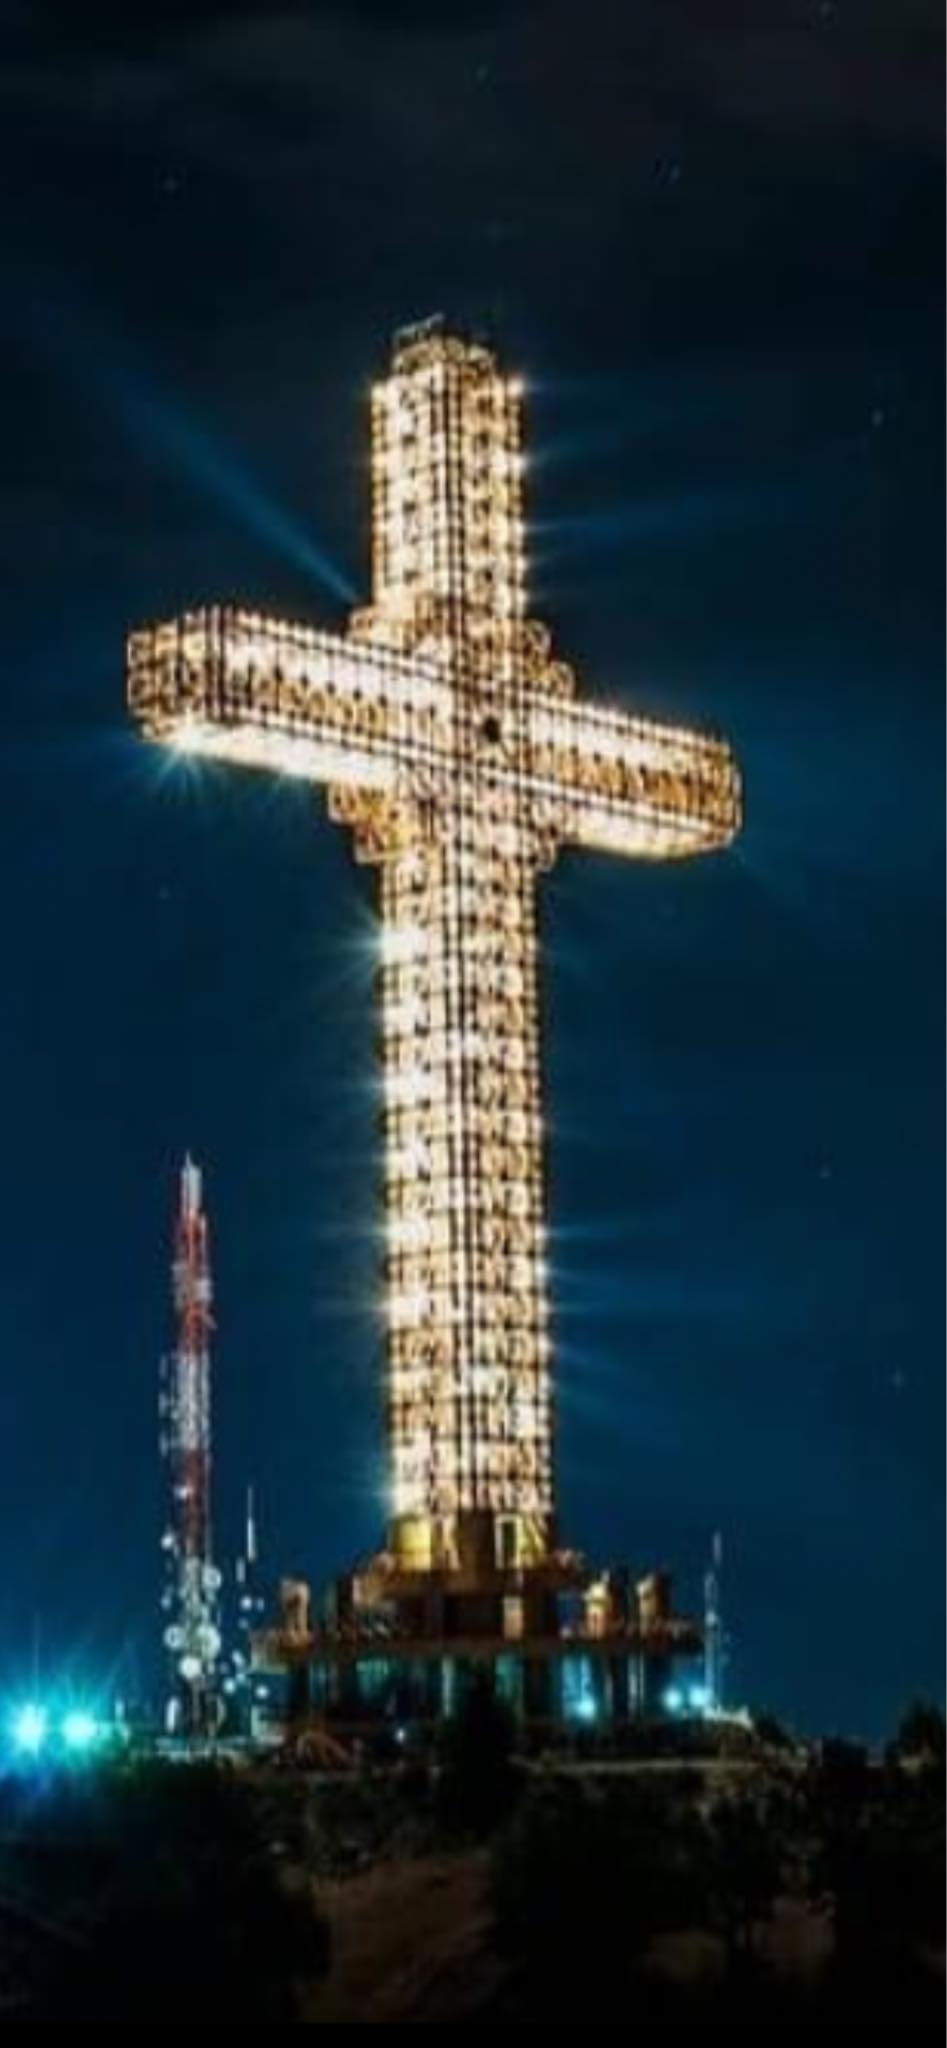 20 години од изградбата на милениумскиот крст на врвот на Водно